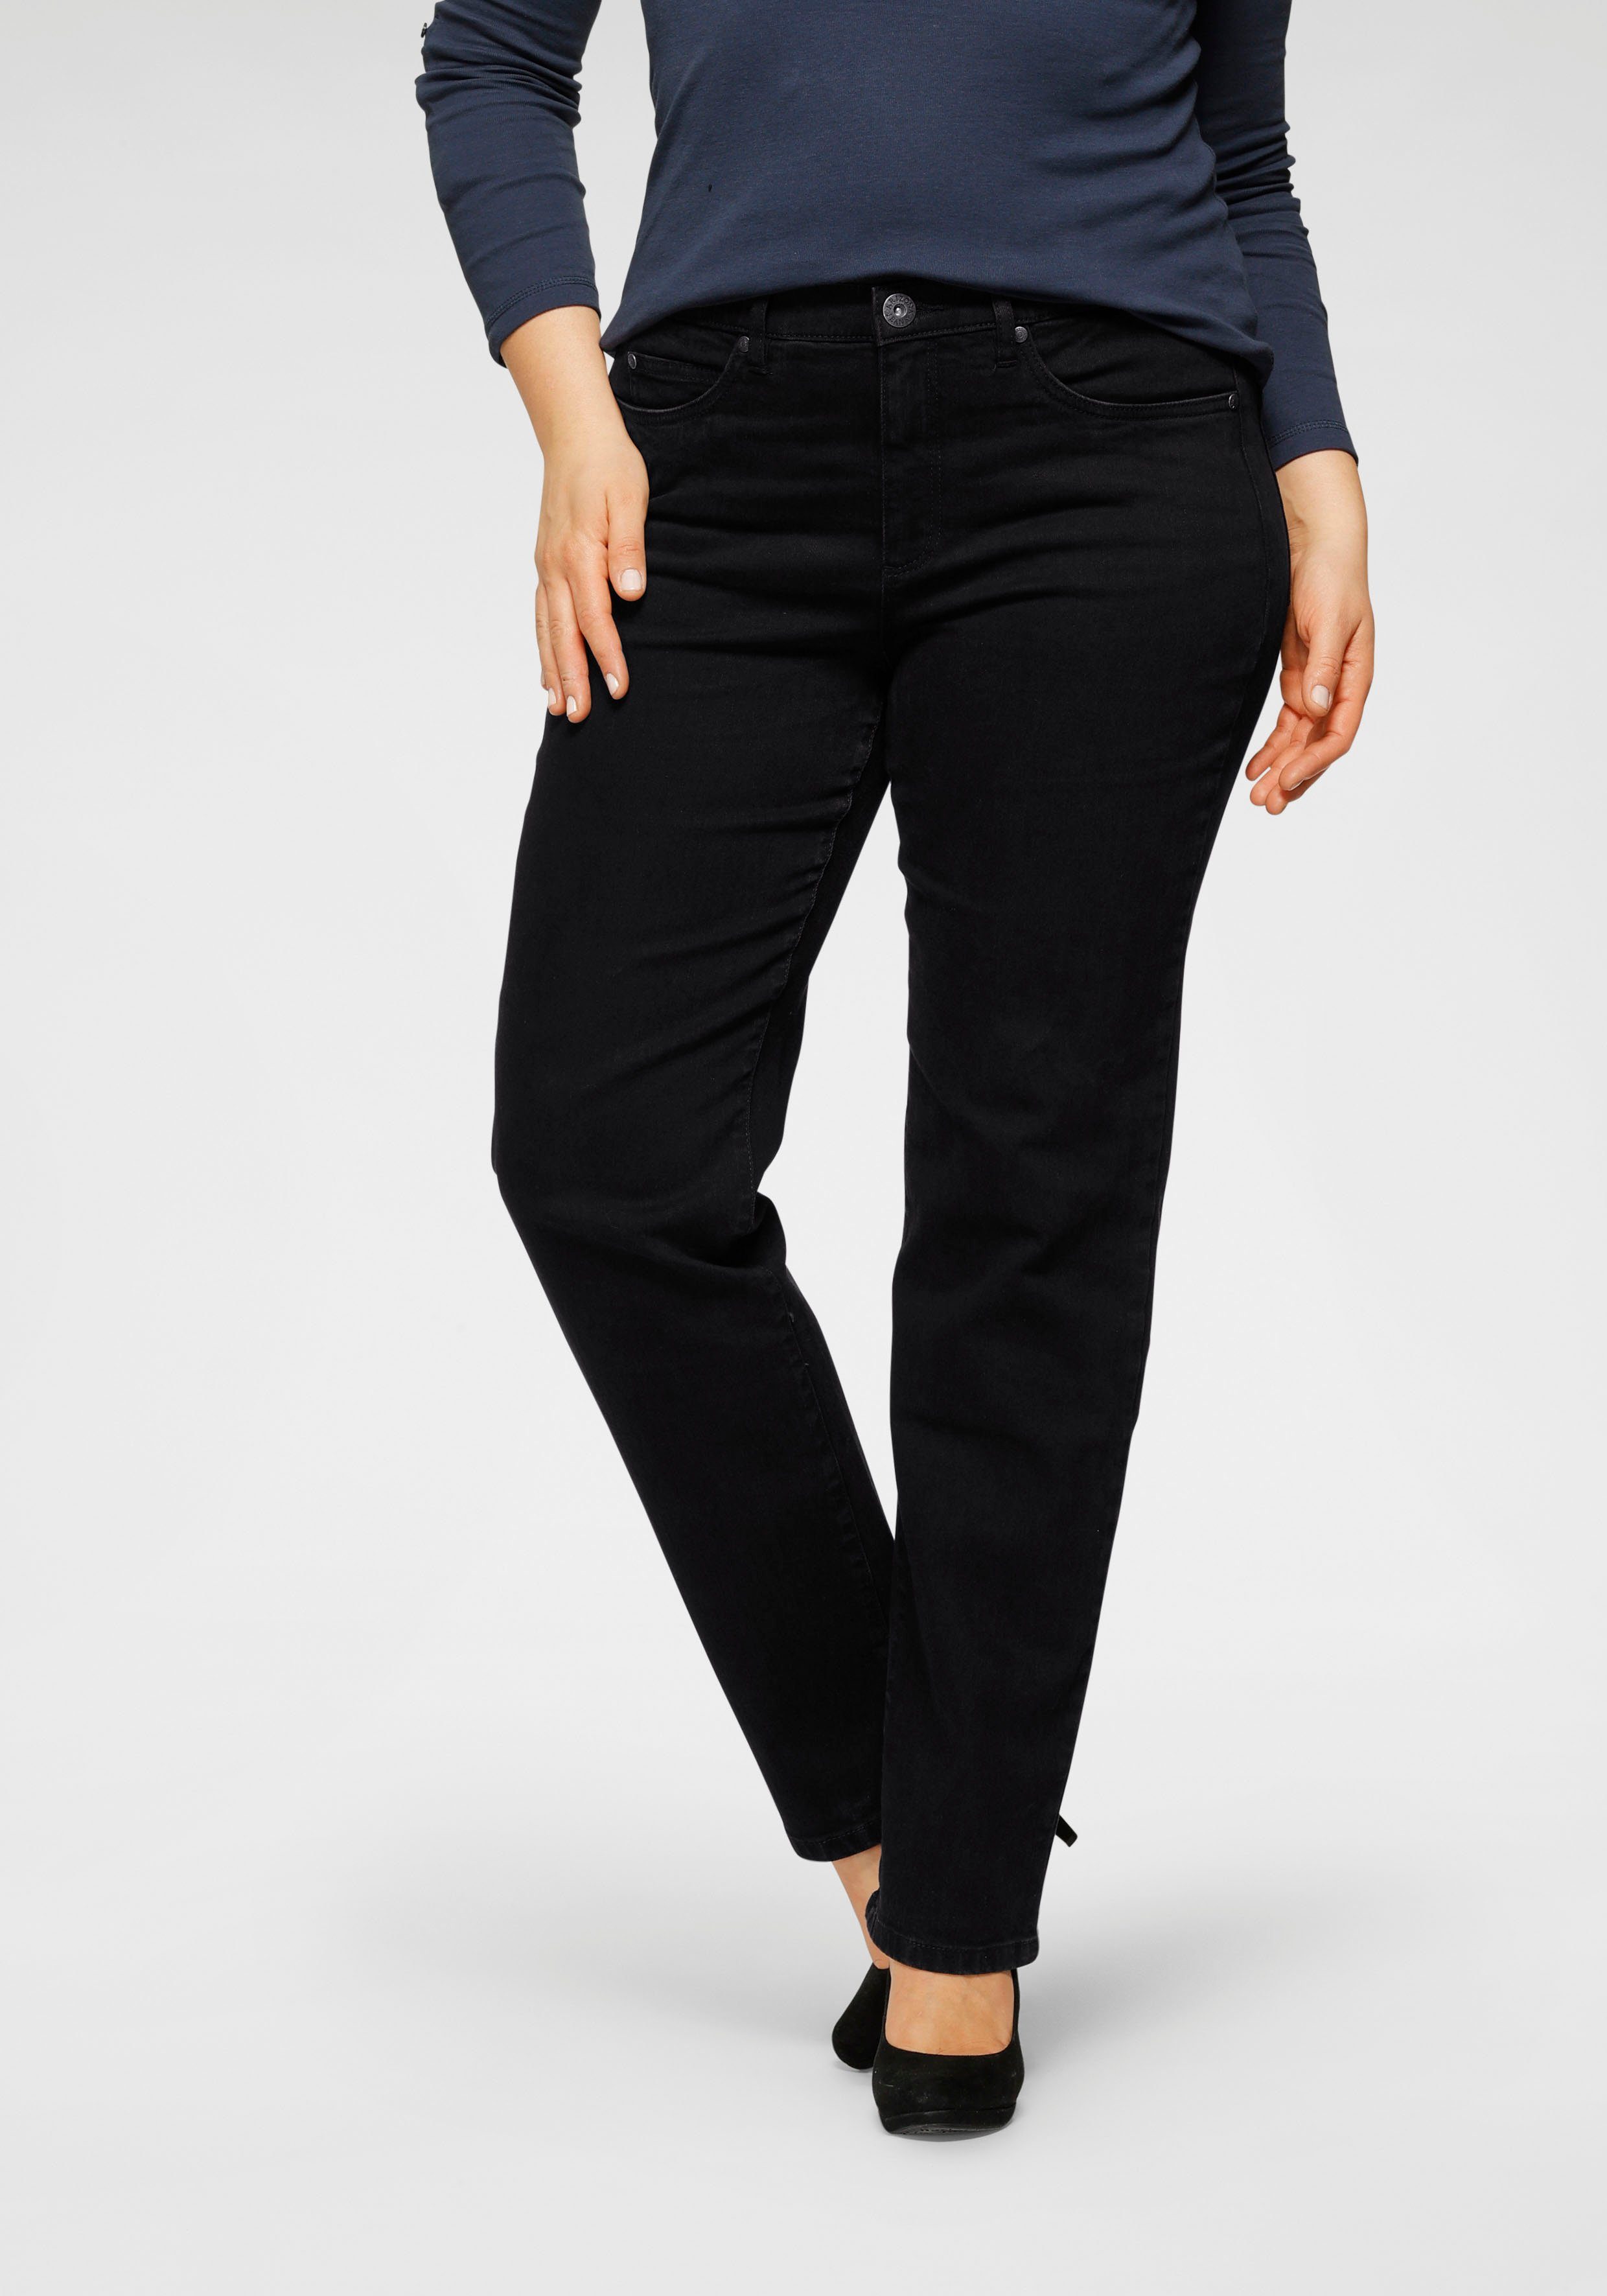 Arizona Straight-Jeans Dehnbund mit Curve-Collection black bequemen